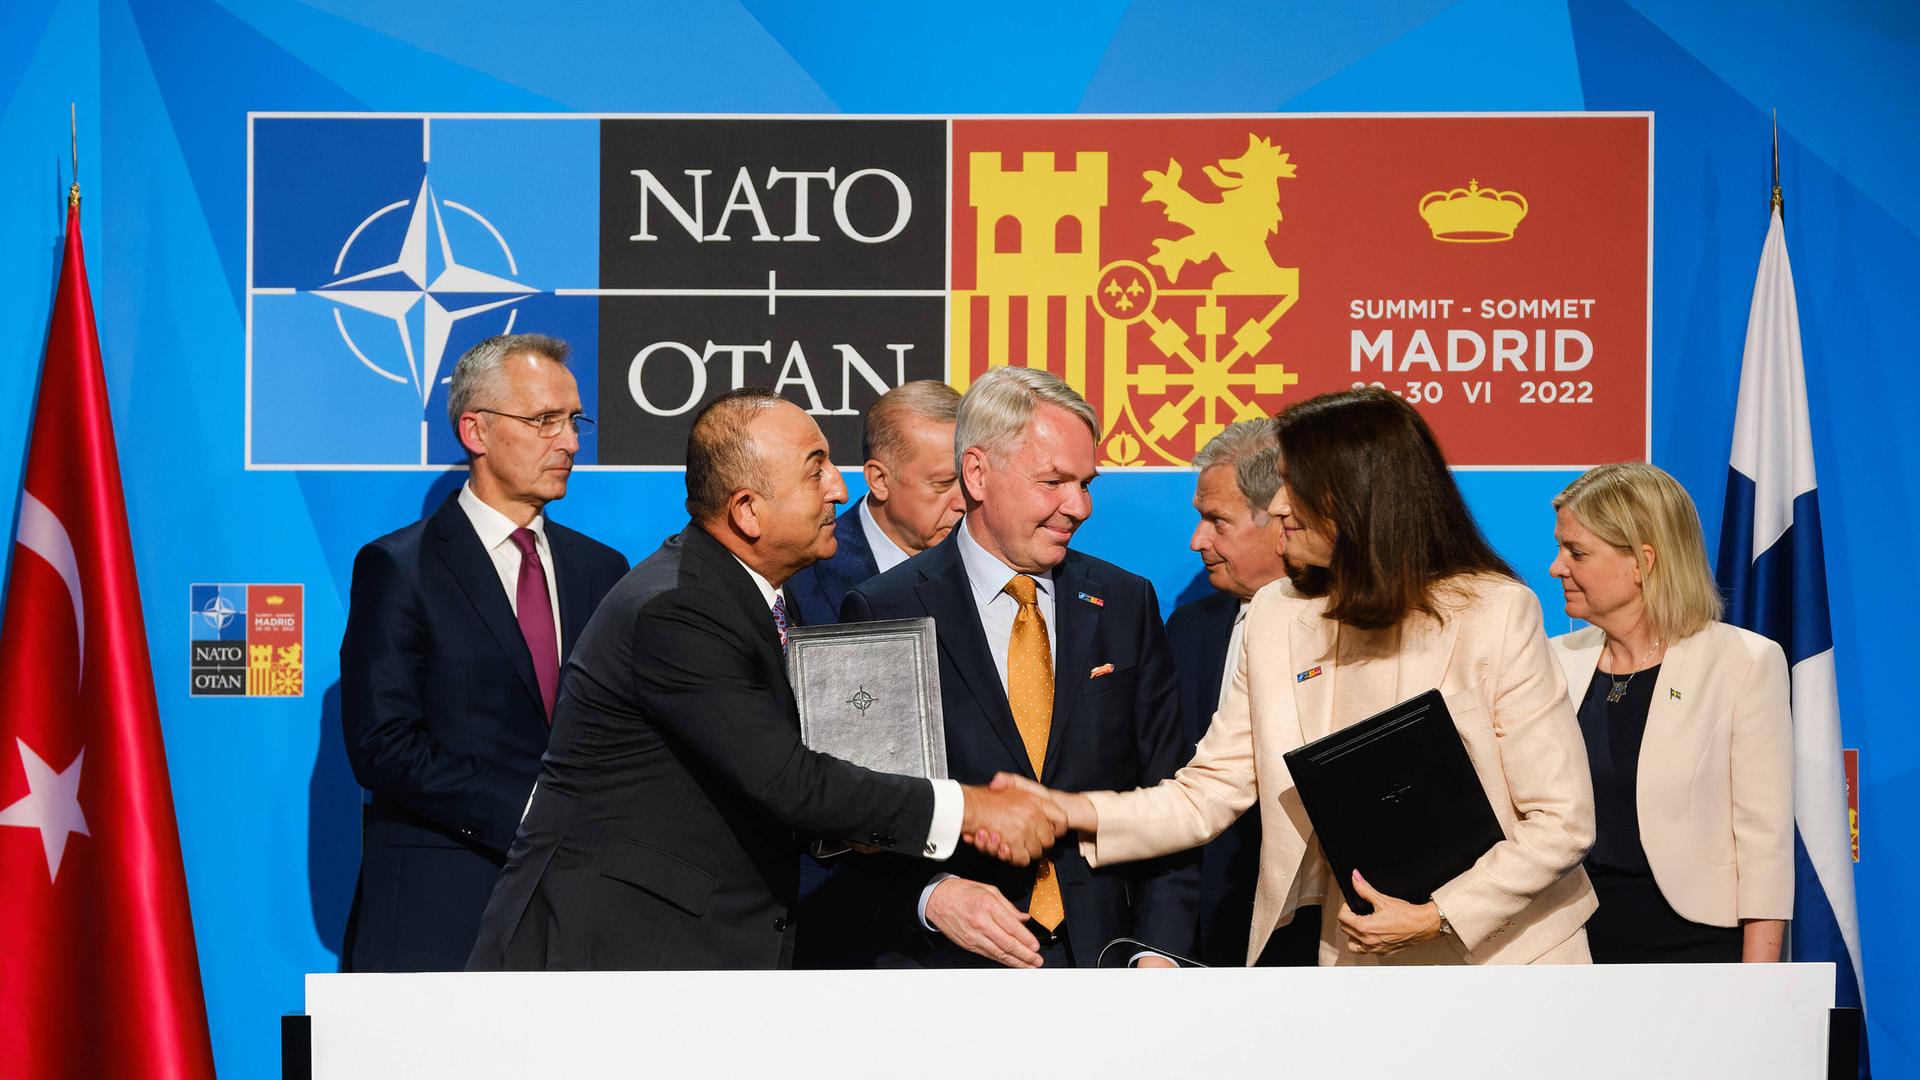 Der türkische Außenminister Mevlut Cavusoglu und die schwedische Außenministerin Ann Linde schütteln sich während einer Unterzeichnungszeremonie am Dienstag, den 28. Juni 2022, die Hände und ebnen damit den Weg für die NATO-Mitgliedschaft Finnlands und Schwedens.